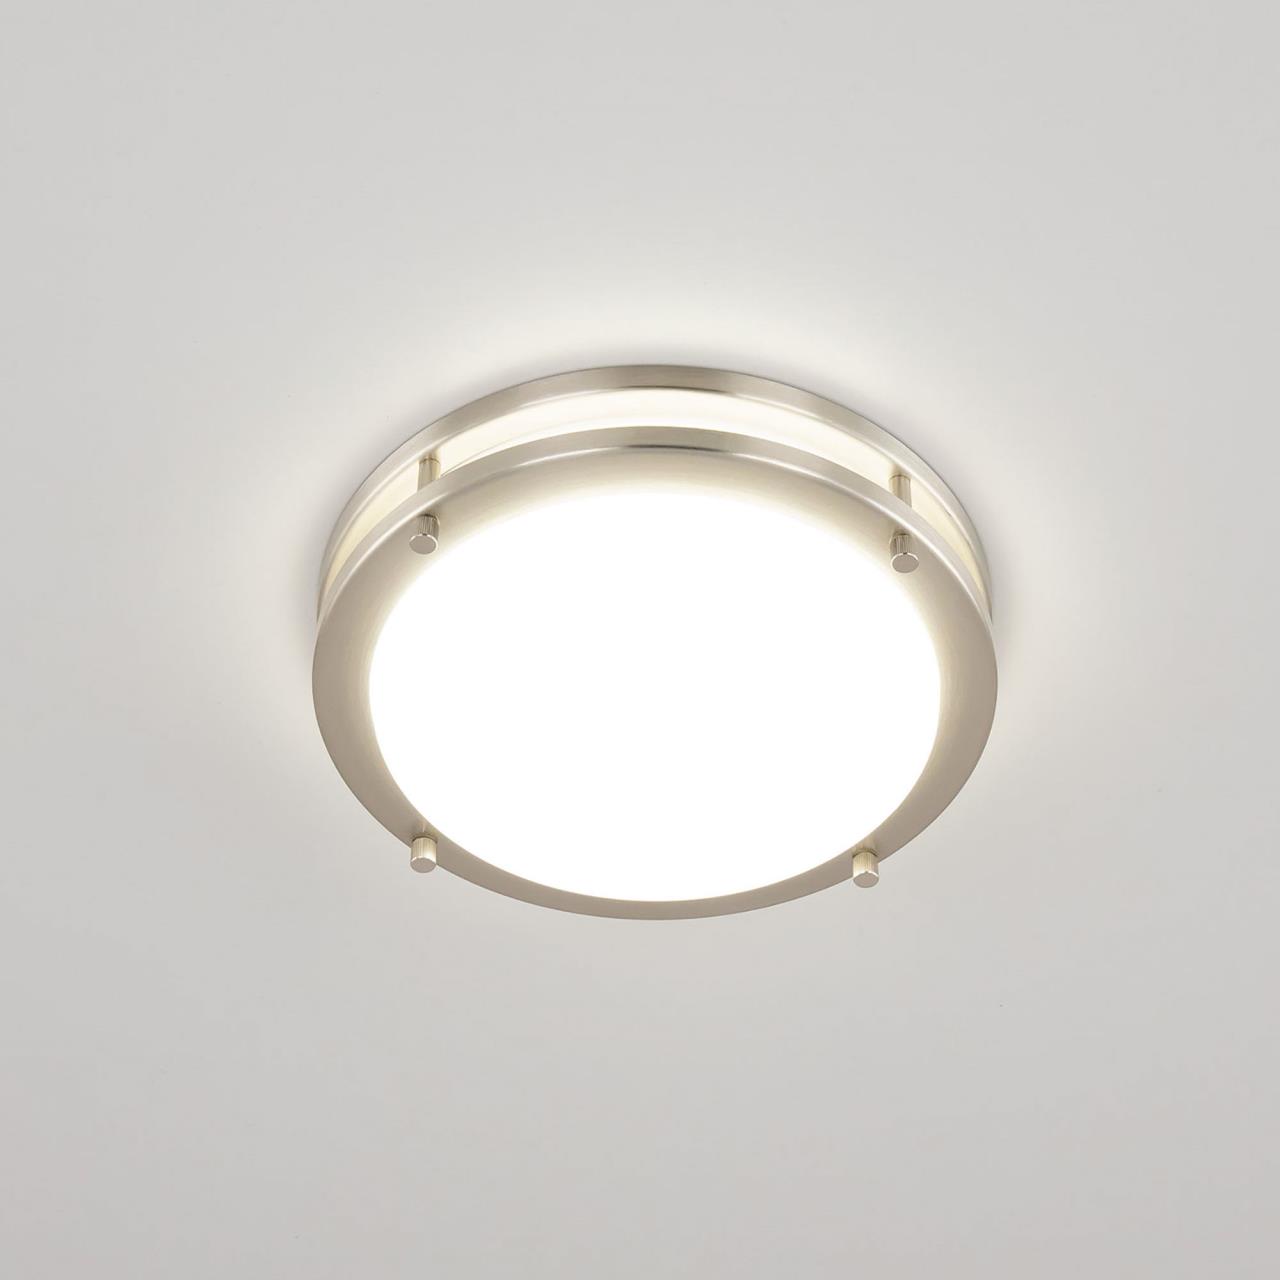 Настенно-потолочный светильник Citilux Бостон CL709201N